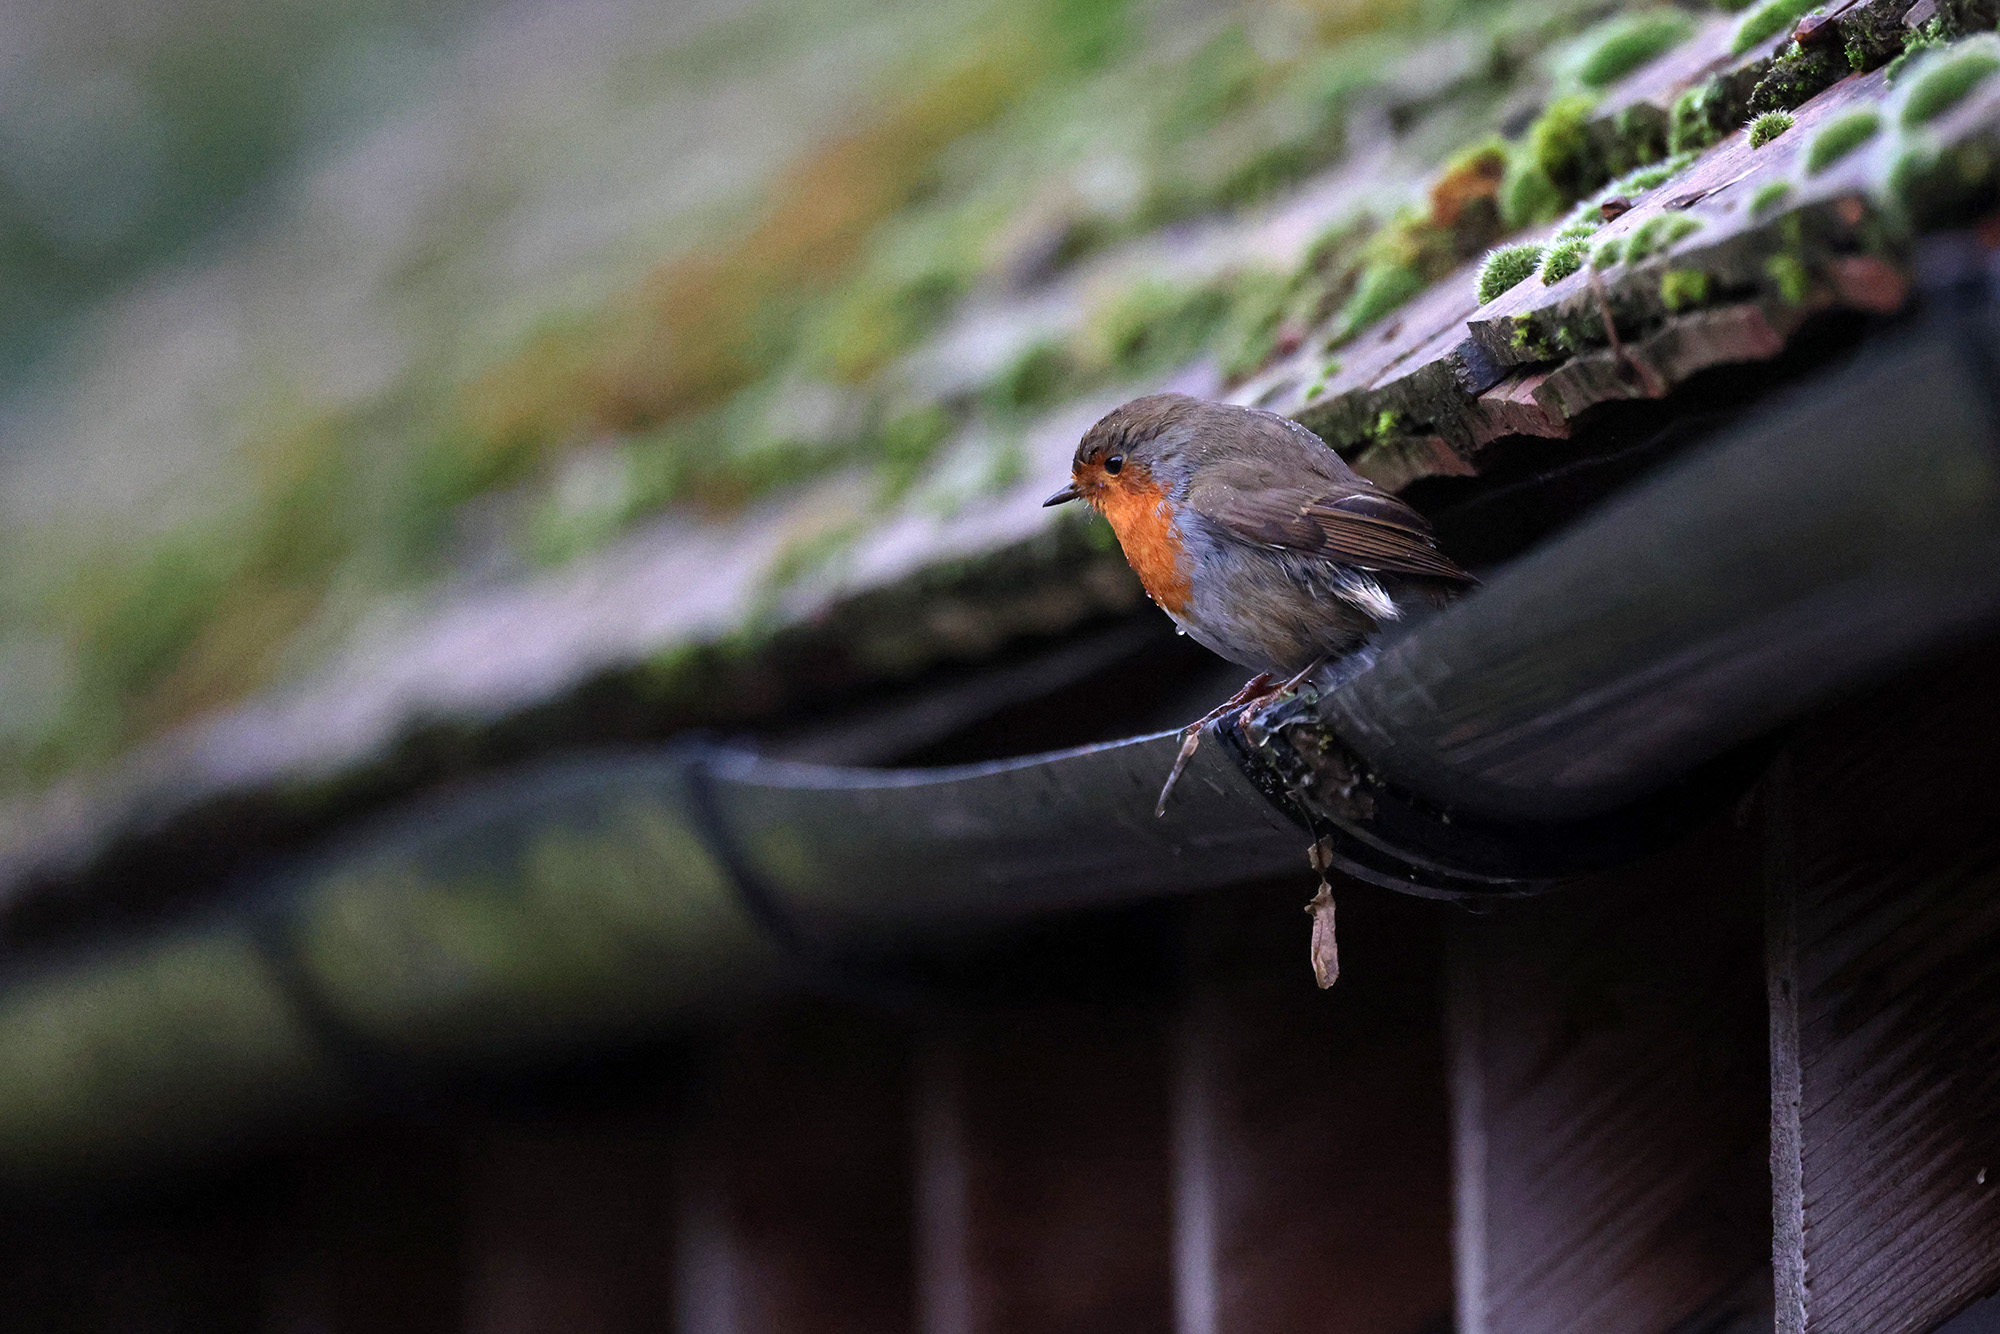 A little robin taking a bath in the guttering